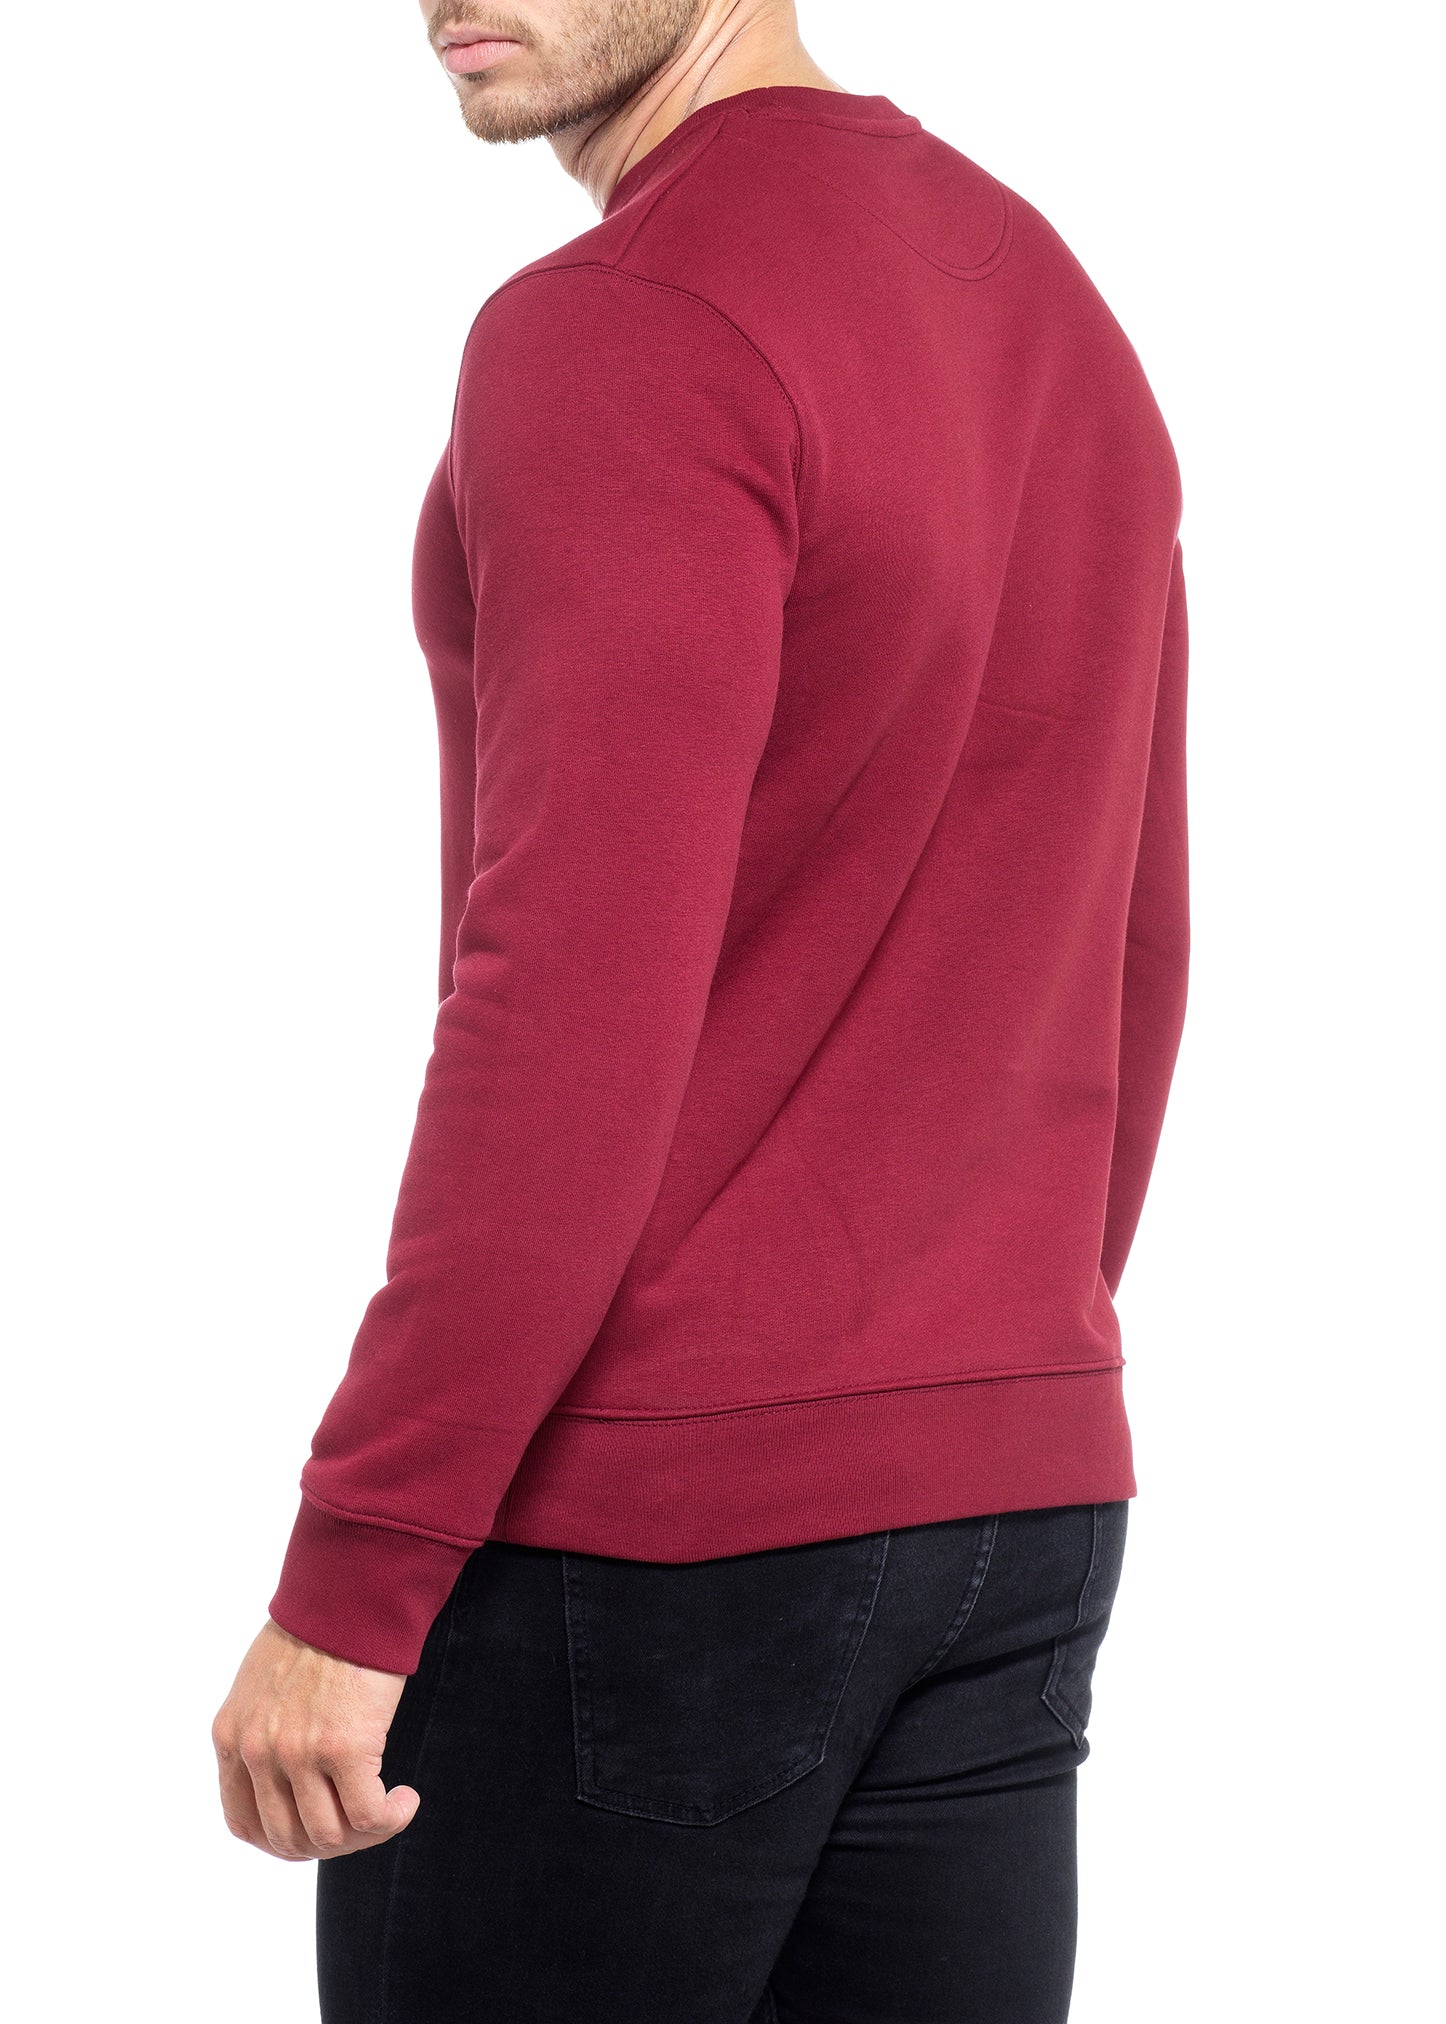 Muscle Fit Burgundy Sweatshirt